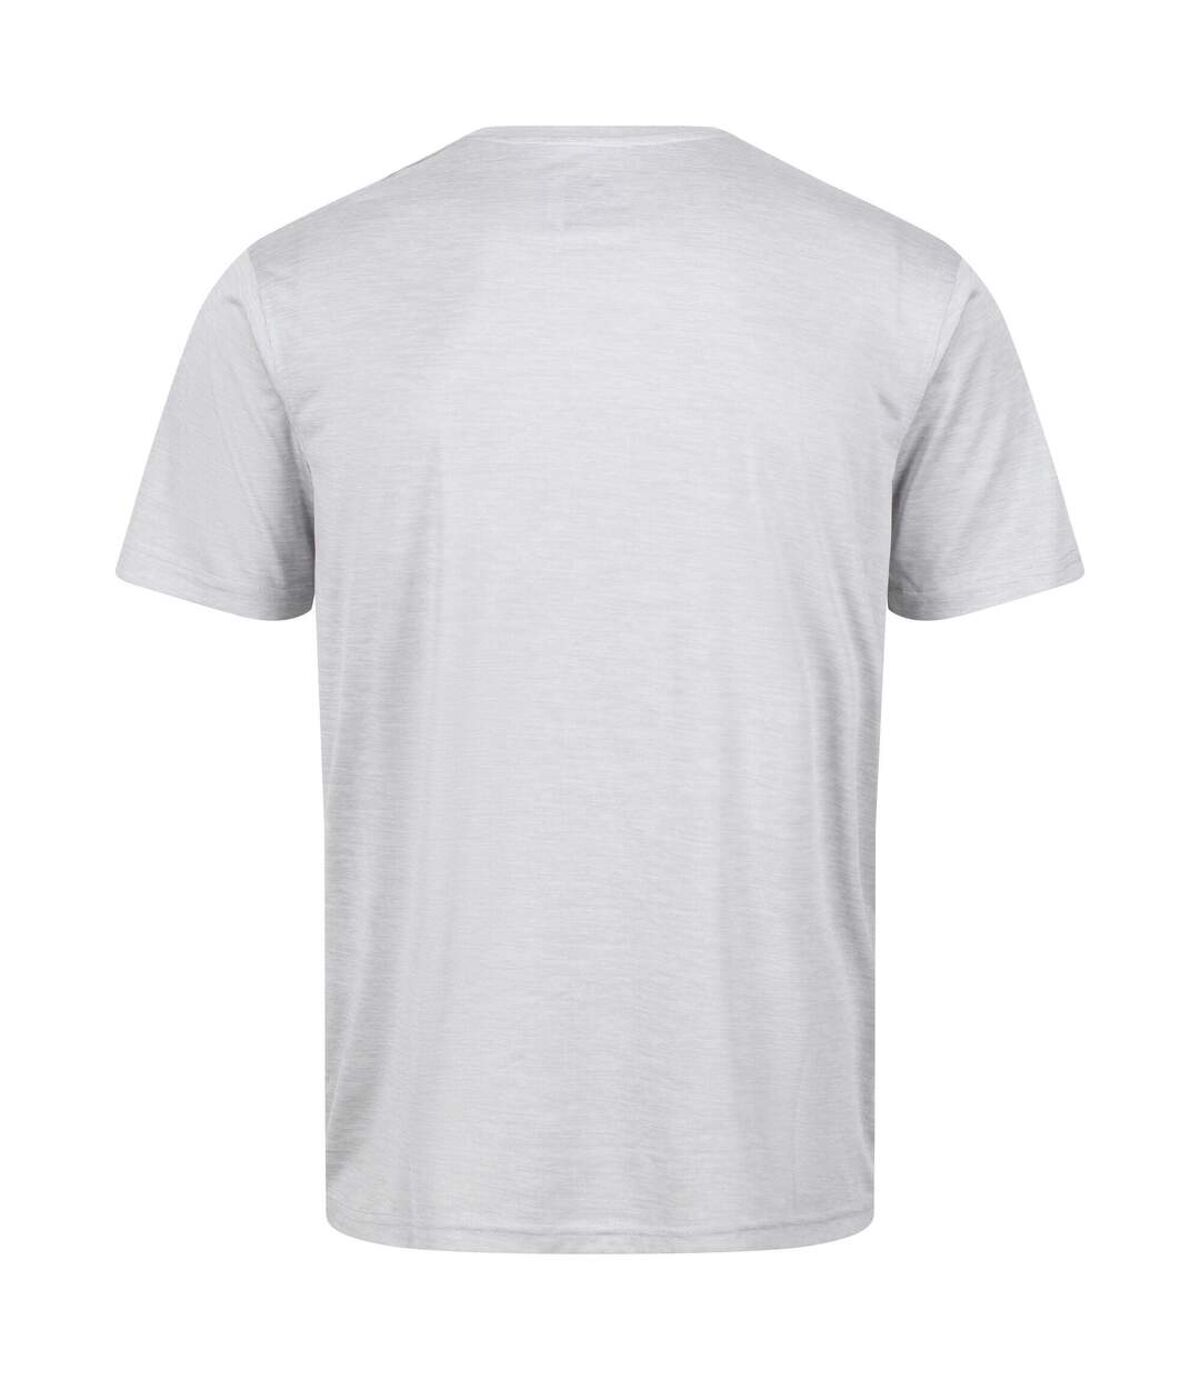 Regatta - T-shirt FINGAL - Homme (Gris argenté) - UTRG7159